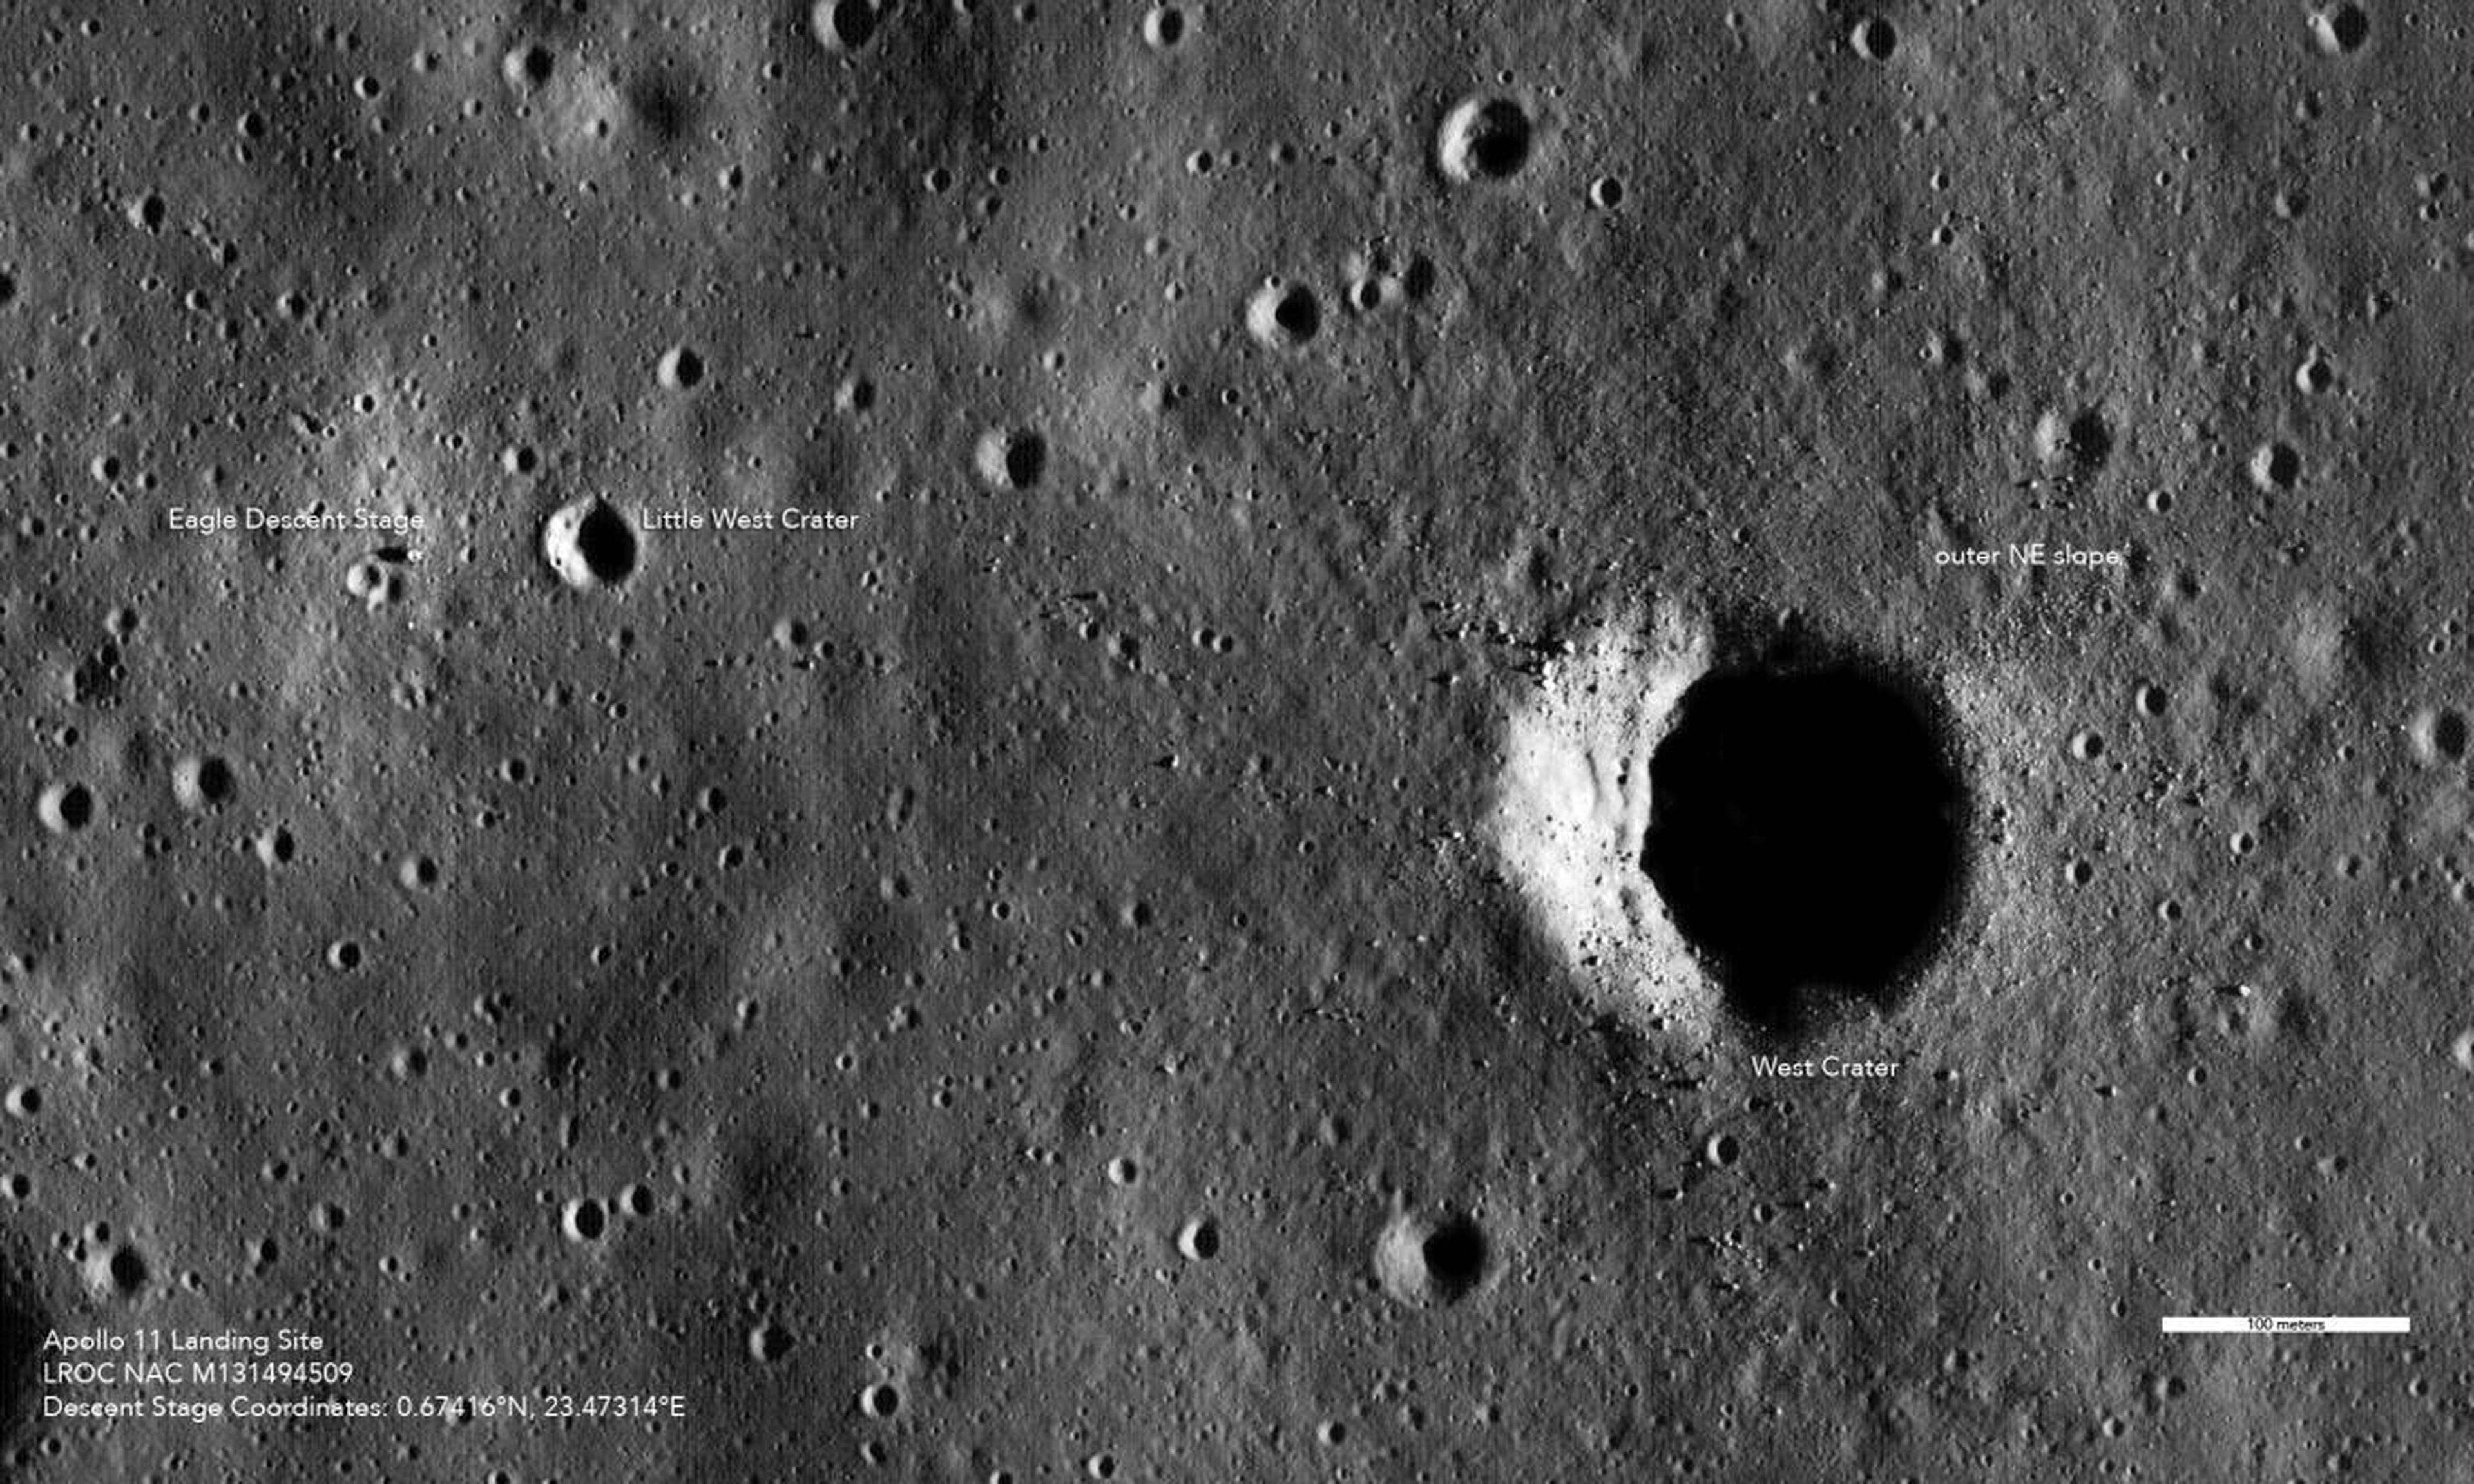 El punto de aterrizaje en el flanco noreste del Cráter Oeste de la luna le parecía demasiado rocoso a Armstrong, así que dirigió el Módulo Lunar hacia uno, el más seguro Pequeño Cráter Oeste.